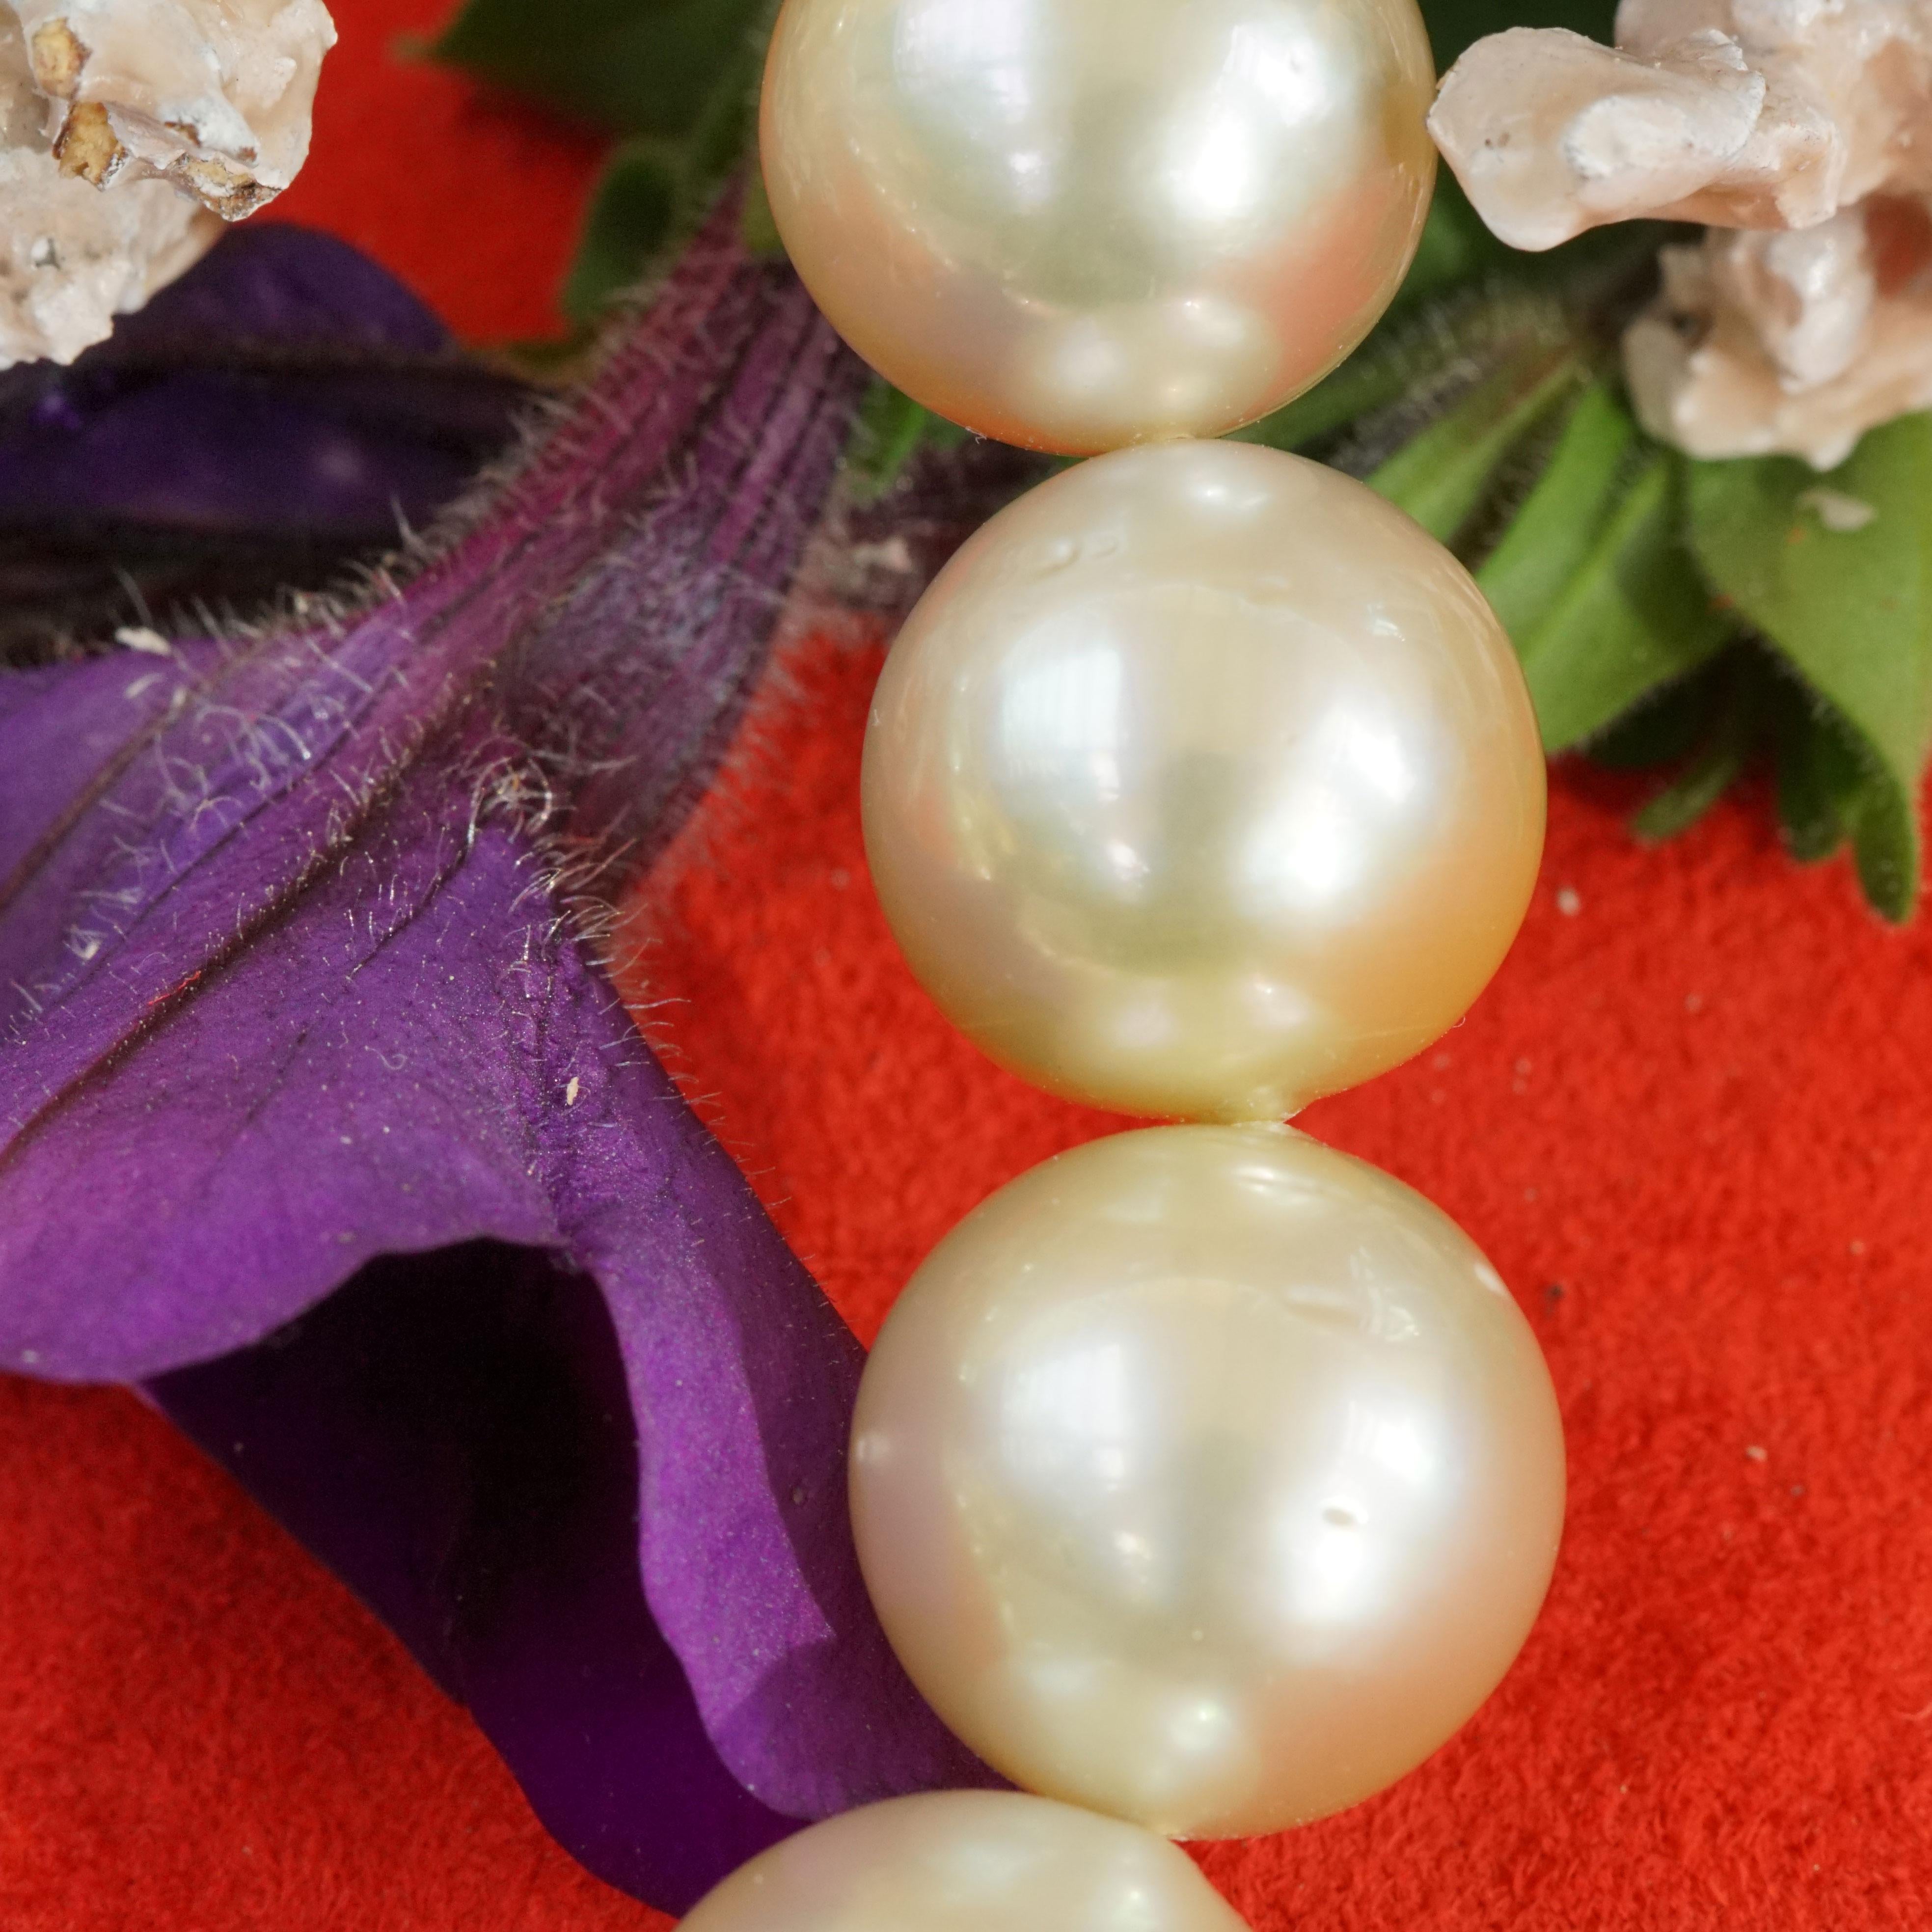 beeindruckende Größe, eine wunderschöne natürliche champagnerfarbene Südsee-Zuchtperlenkette bestehend aus 31 Perlen, 15,1 x 13 mm, heller Goldton mit Obertönen in zartem Grün, Rosa und Silber, AAA+, feinster Lüster, kaum Wachstumsspuren, rund, mit